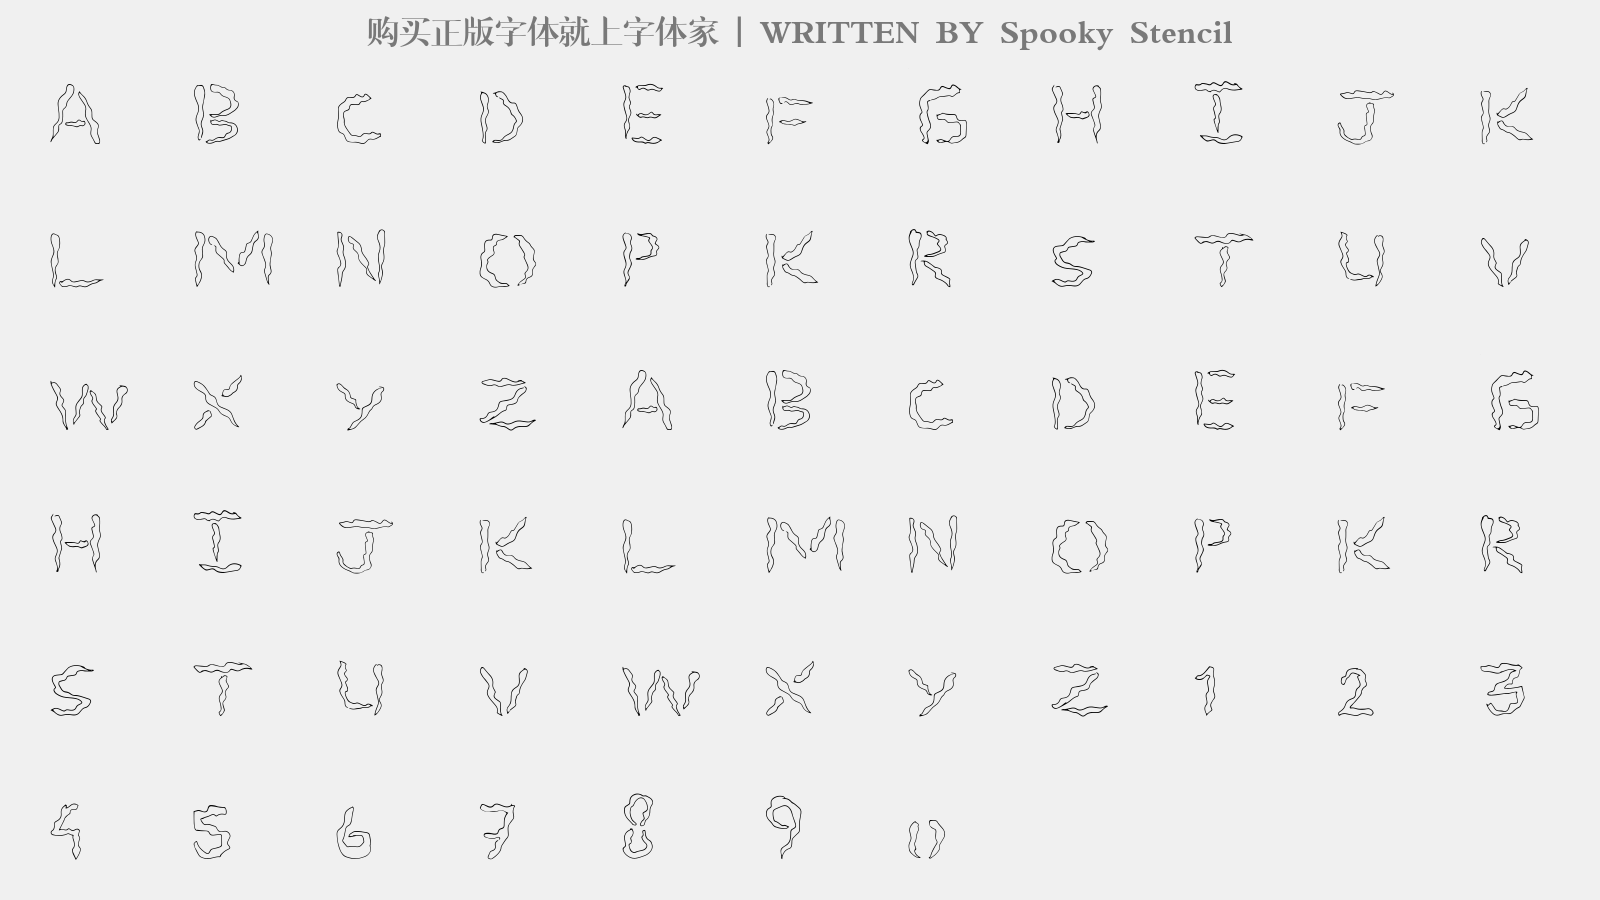 Spooky Stencil - 大写字母/小写字母/数字